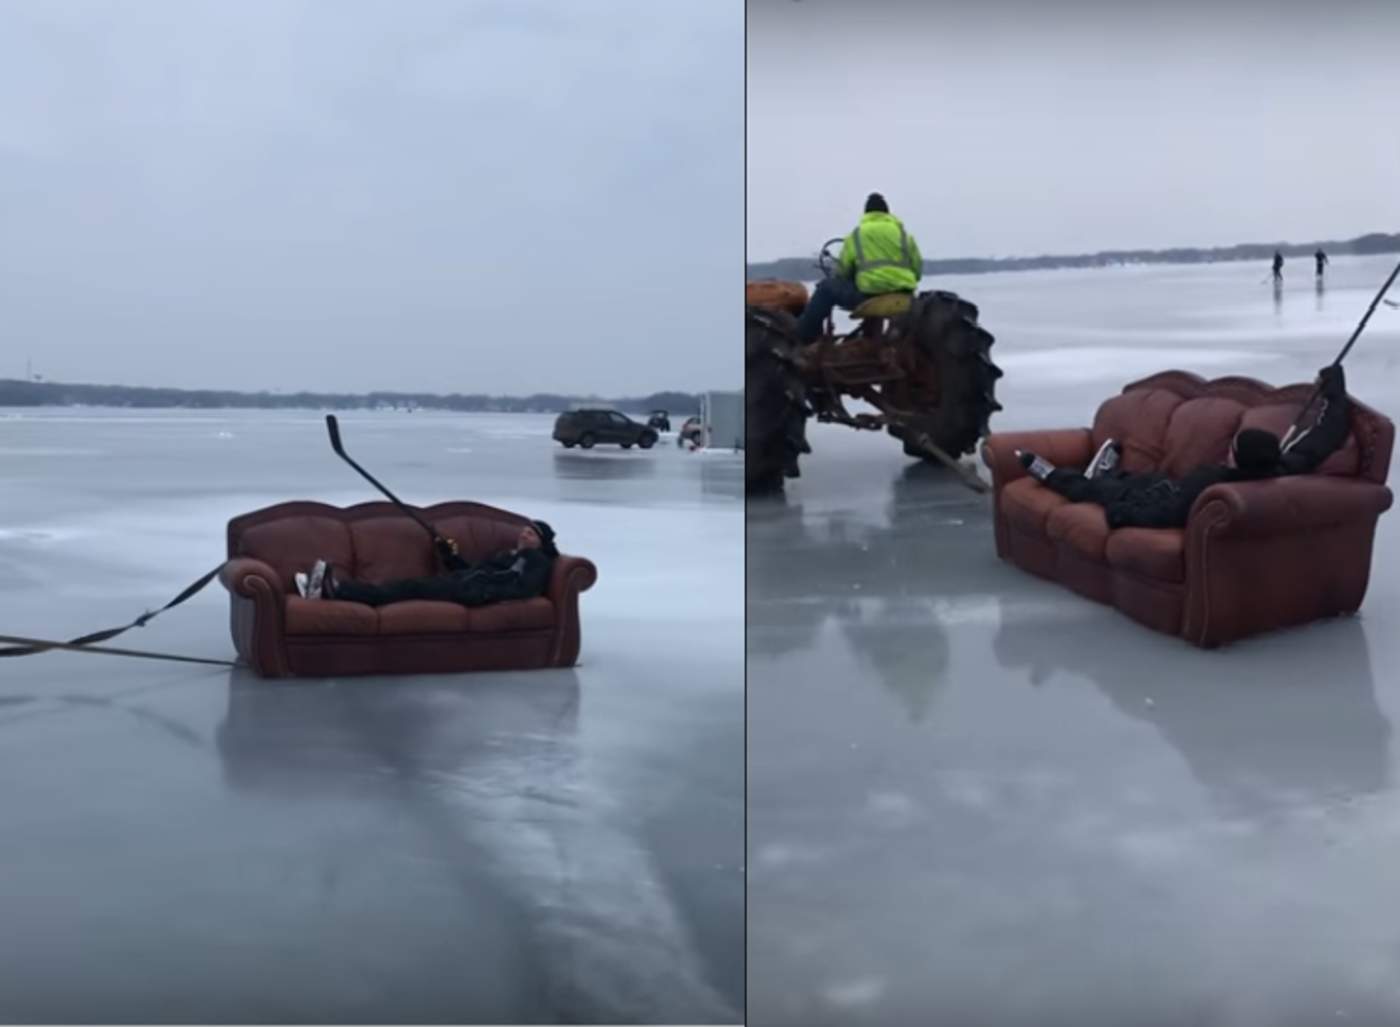 Usan un sofá para patinar sobre un lago congelado